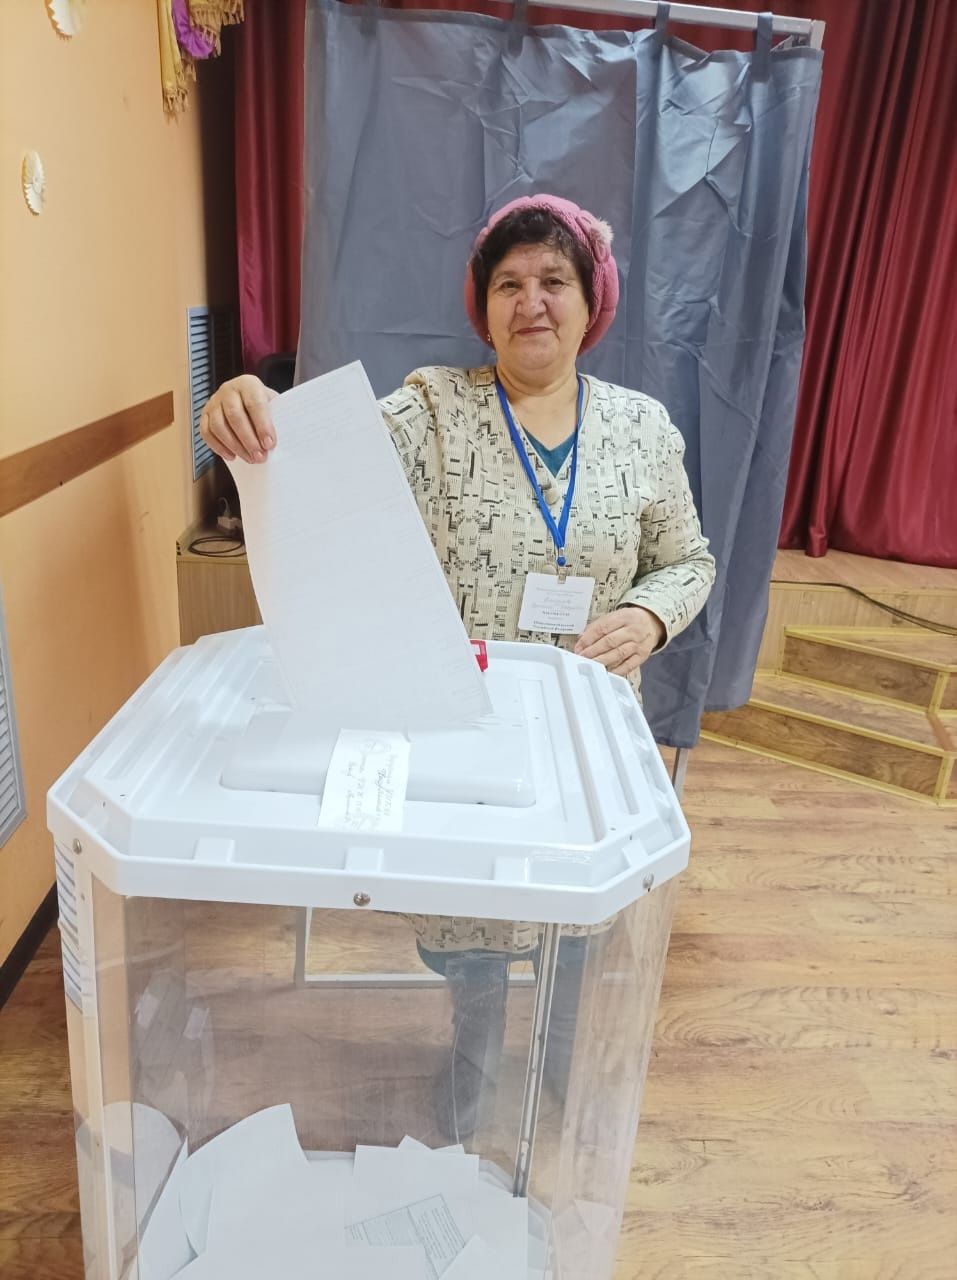 Жительница Салтыганова на избирательный участок пришла с пирогами